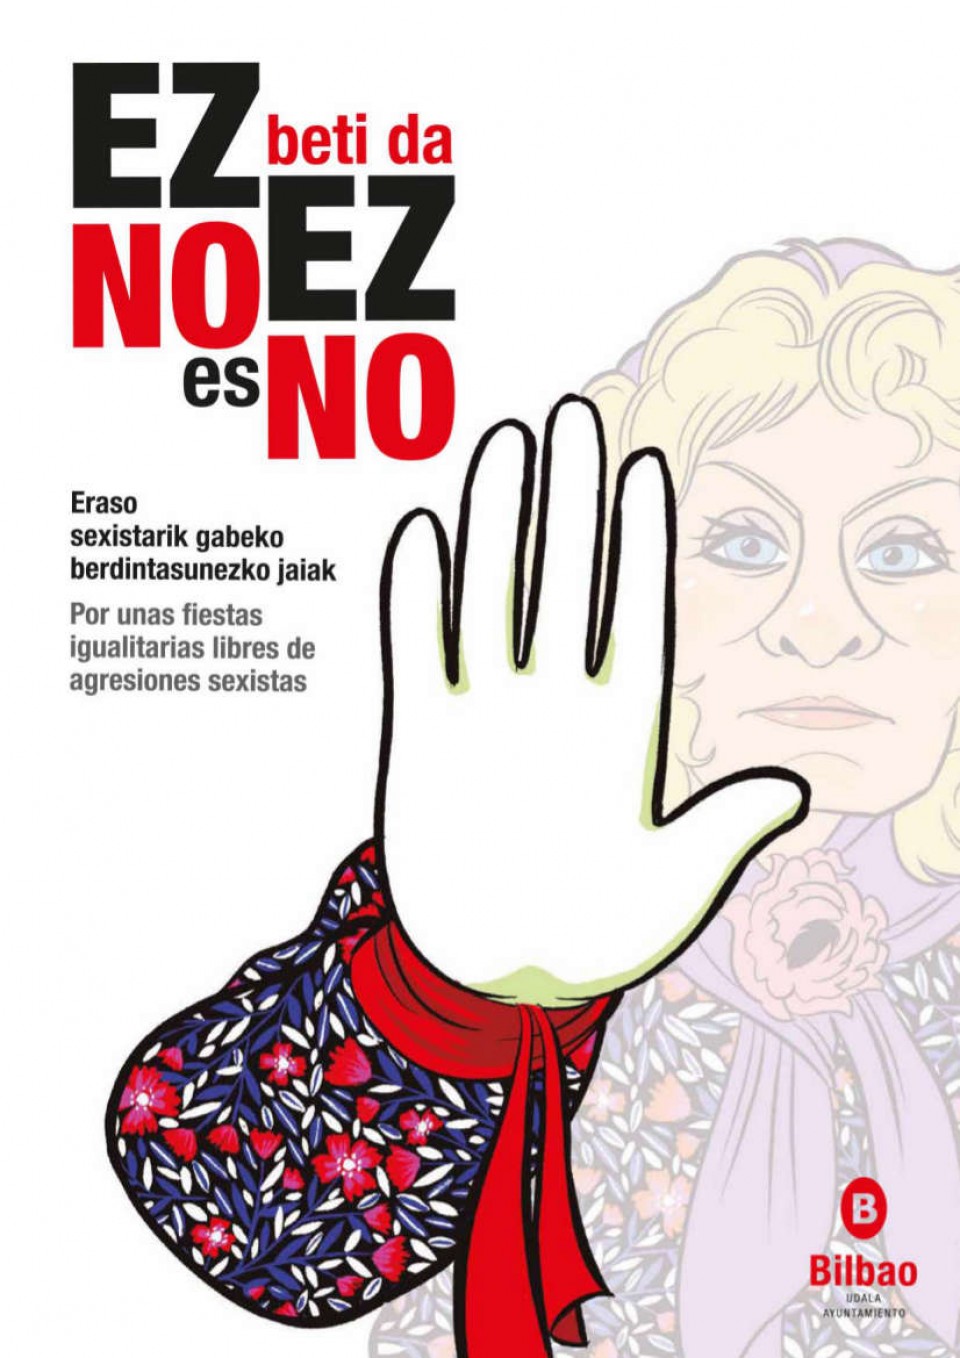 Campaña para prevenir agresiones sexistas en la Aste Nagusia. Foto: Ayuntamiento de Bilbao